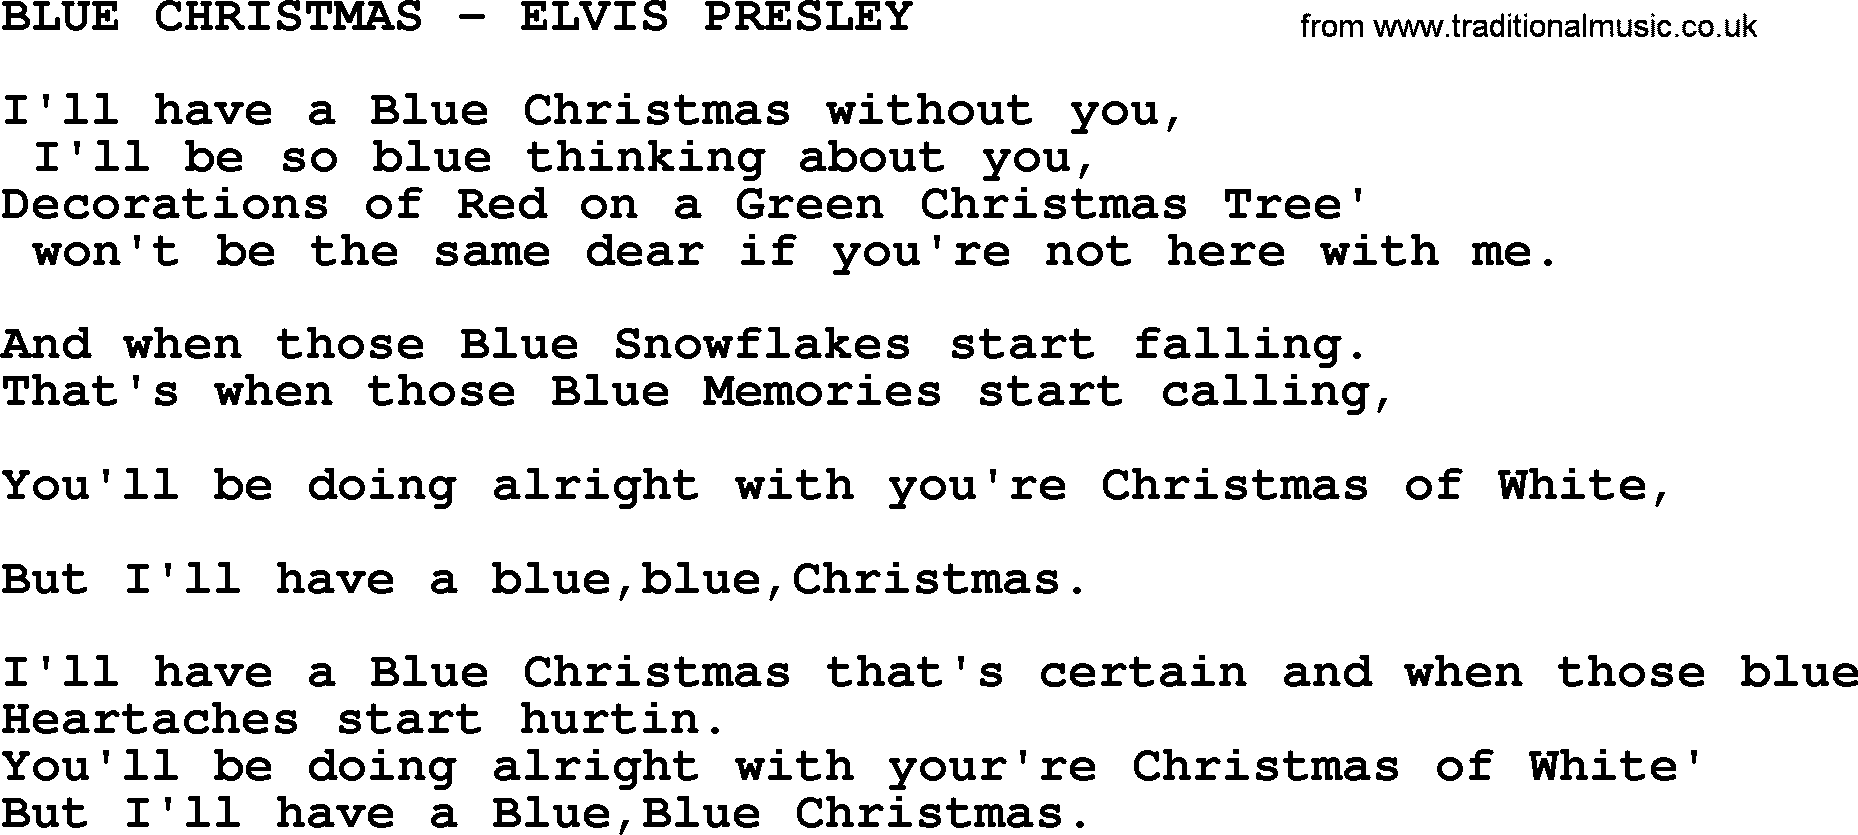 Elvis Presley - wide 9